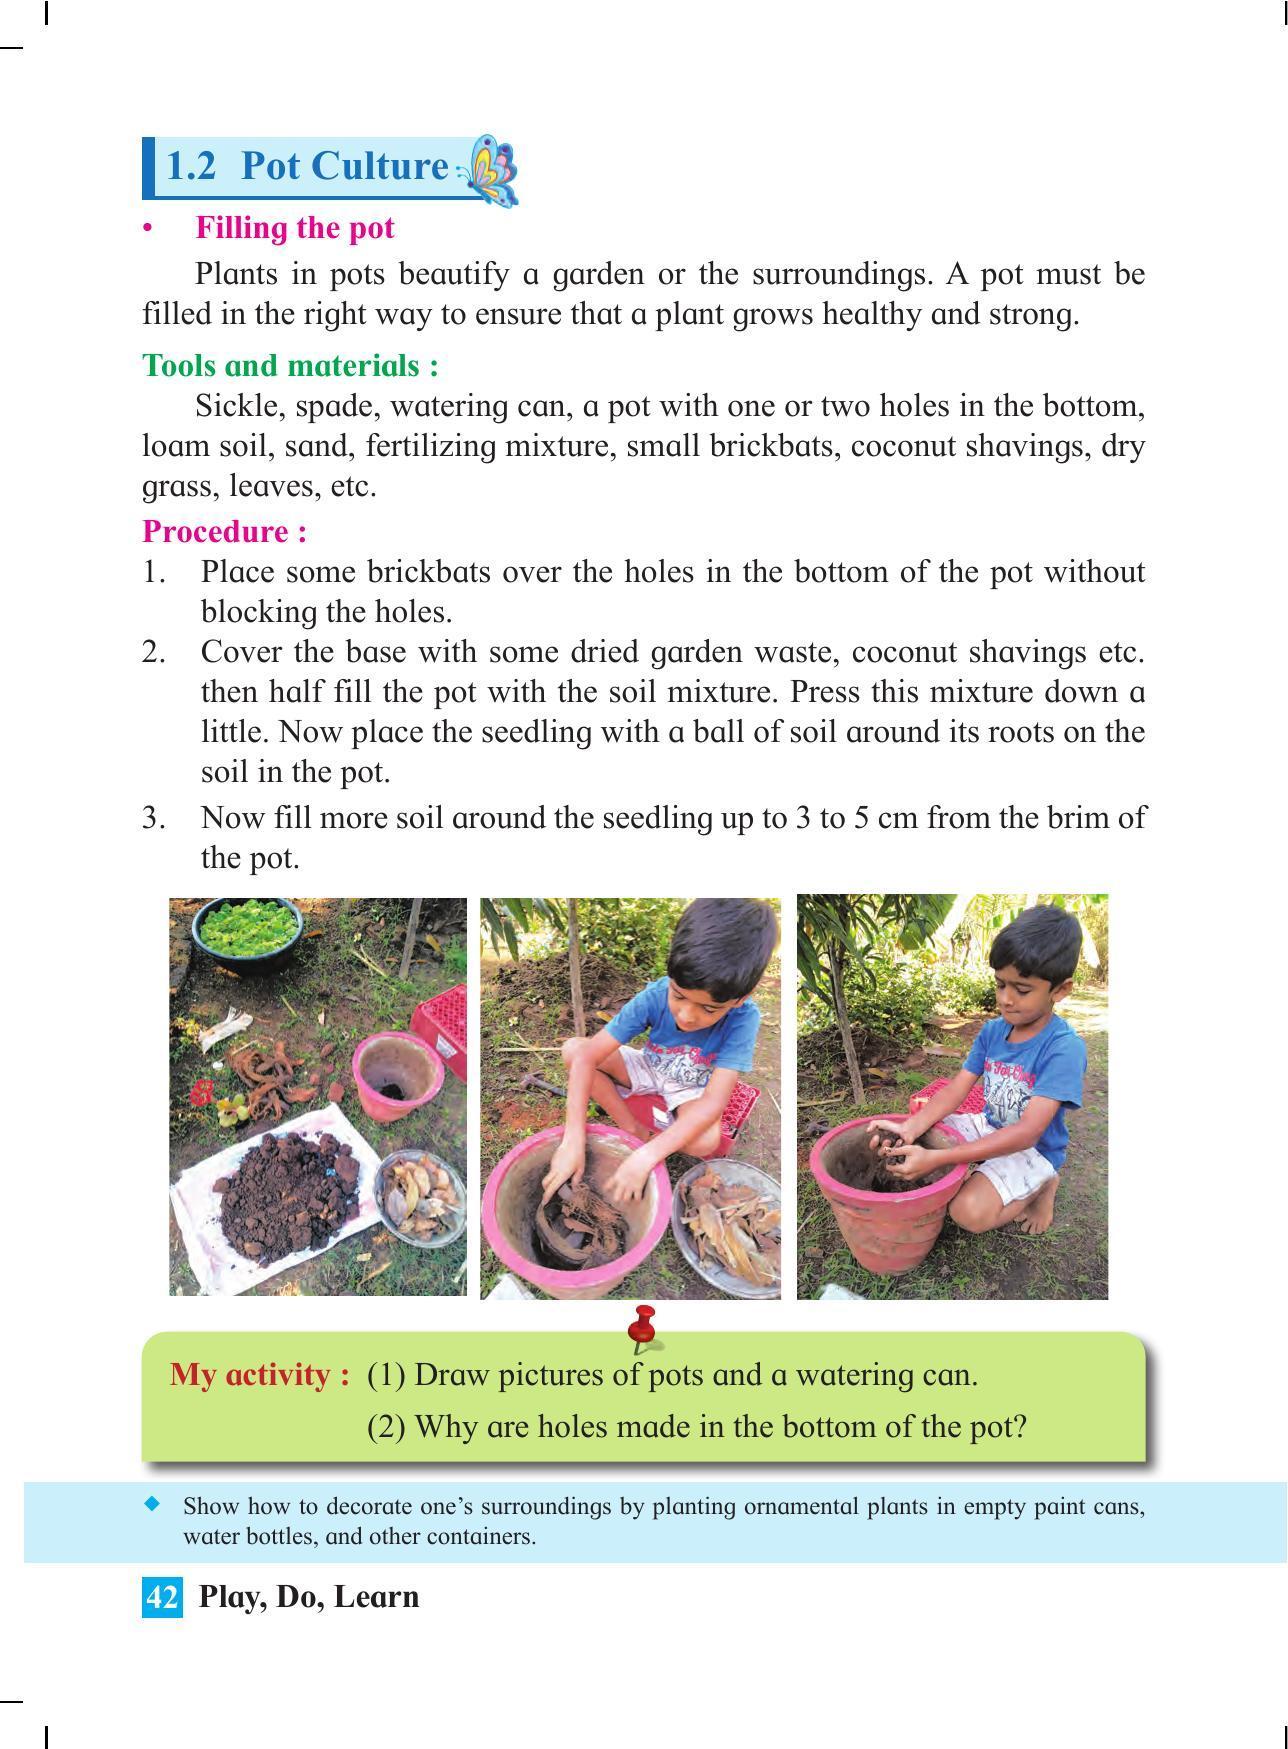 Maharashtra Board Class 4 Play Do Learn (English Medium) Textbook - Page 51